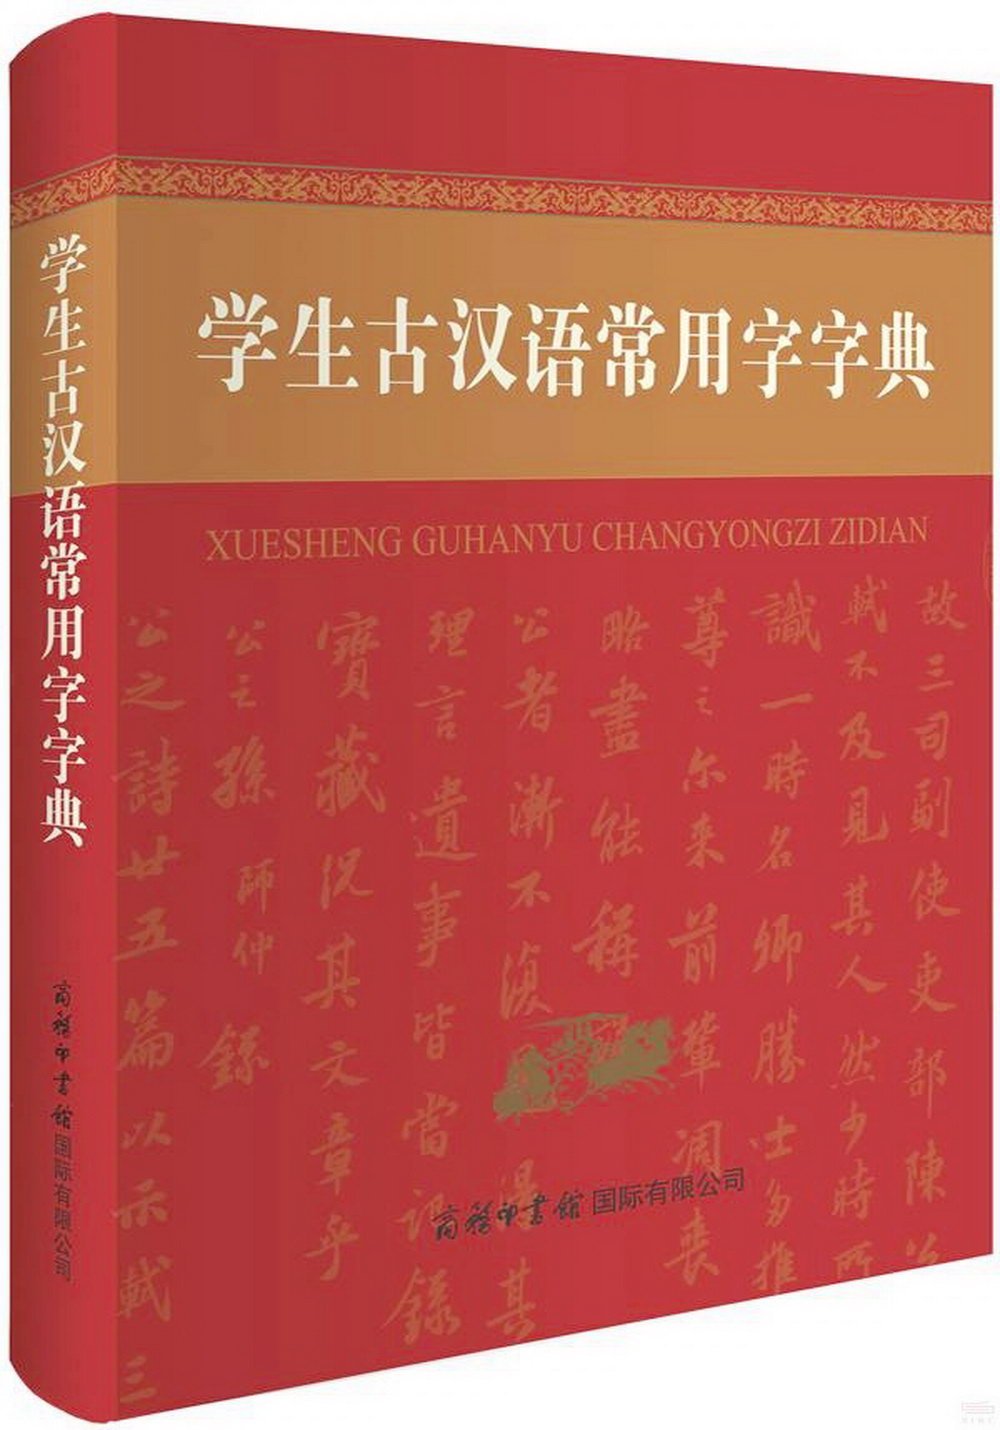 學生古漢語常用字字典